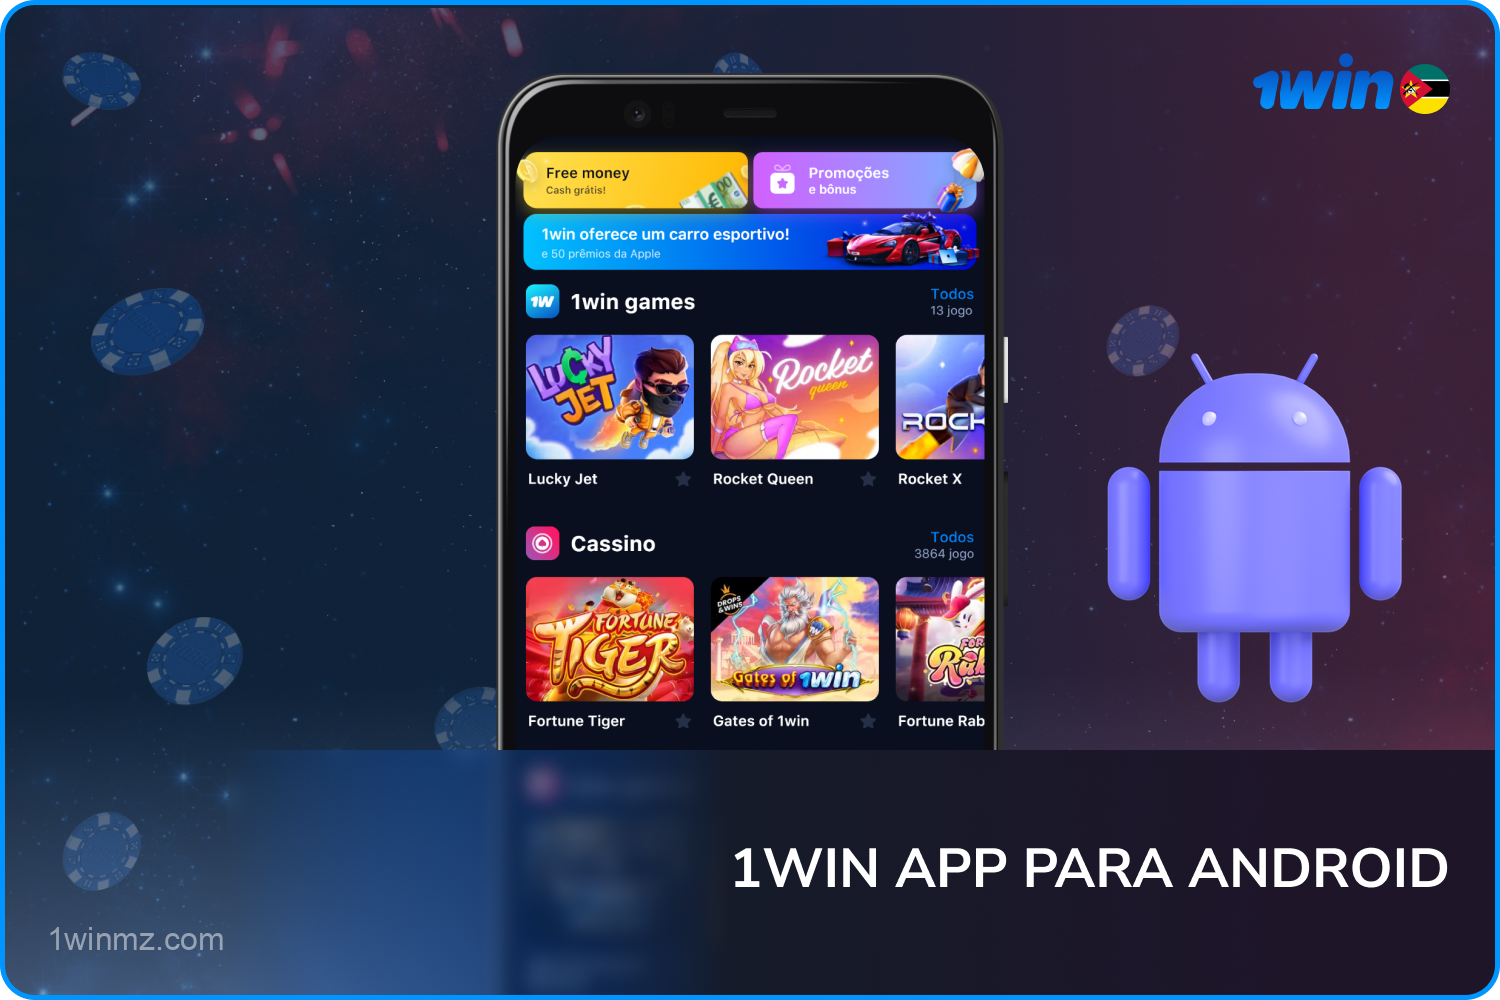 O rápido e conveniente aplicativo móvel 1win está disponível para jogadores com smartphones na plataforma Android